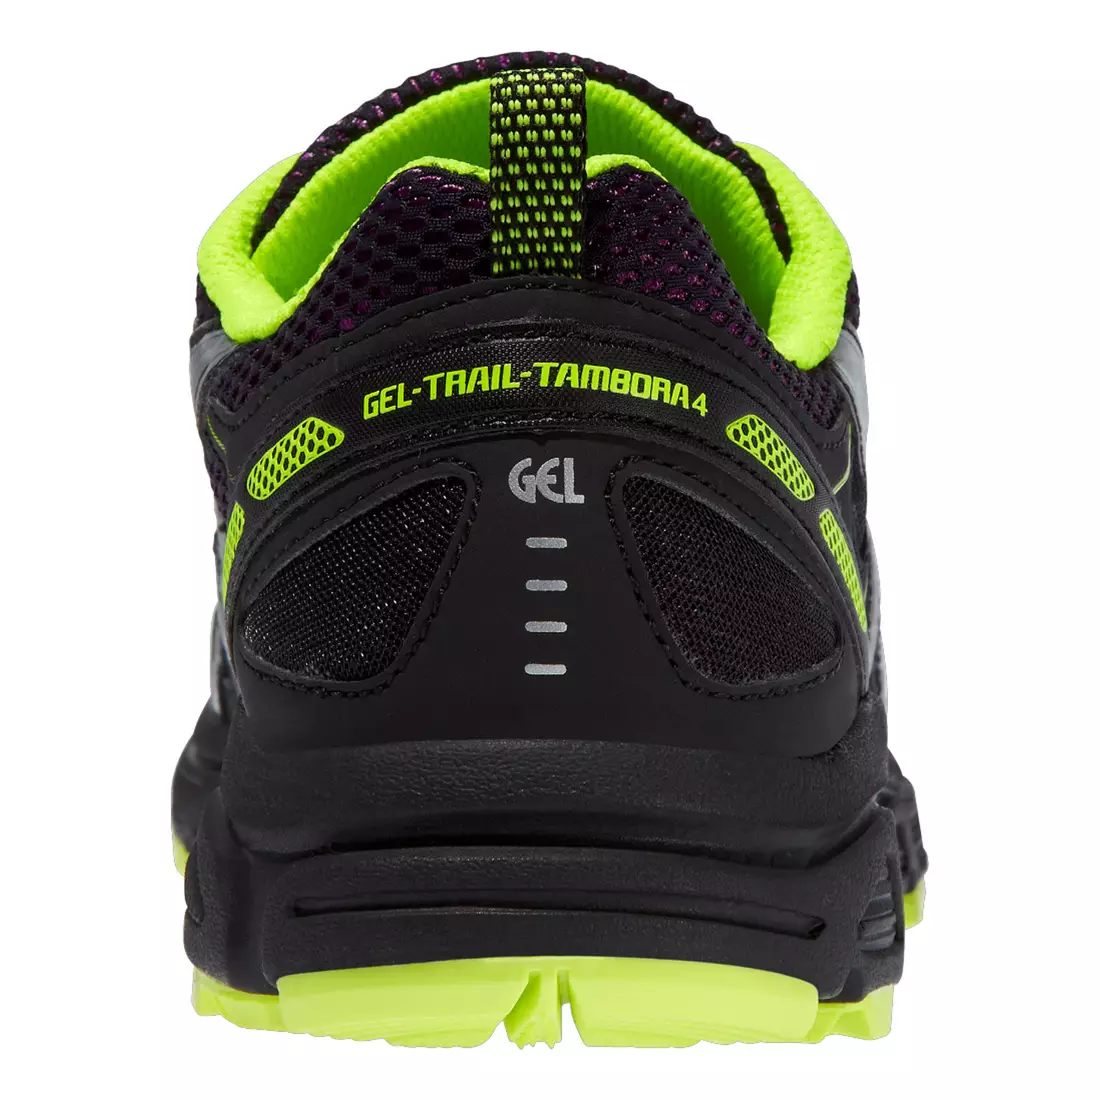 ASICS GEL-TRAIL-TAMBORA 4 dámské trailové běžecké boty 3393